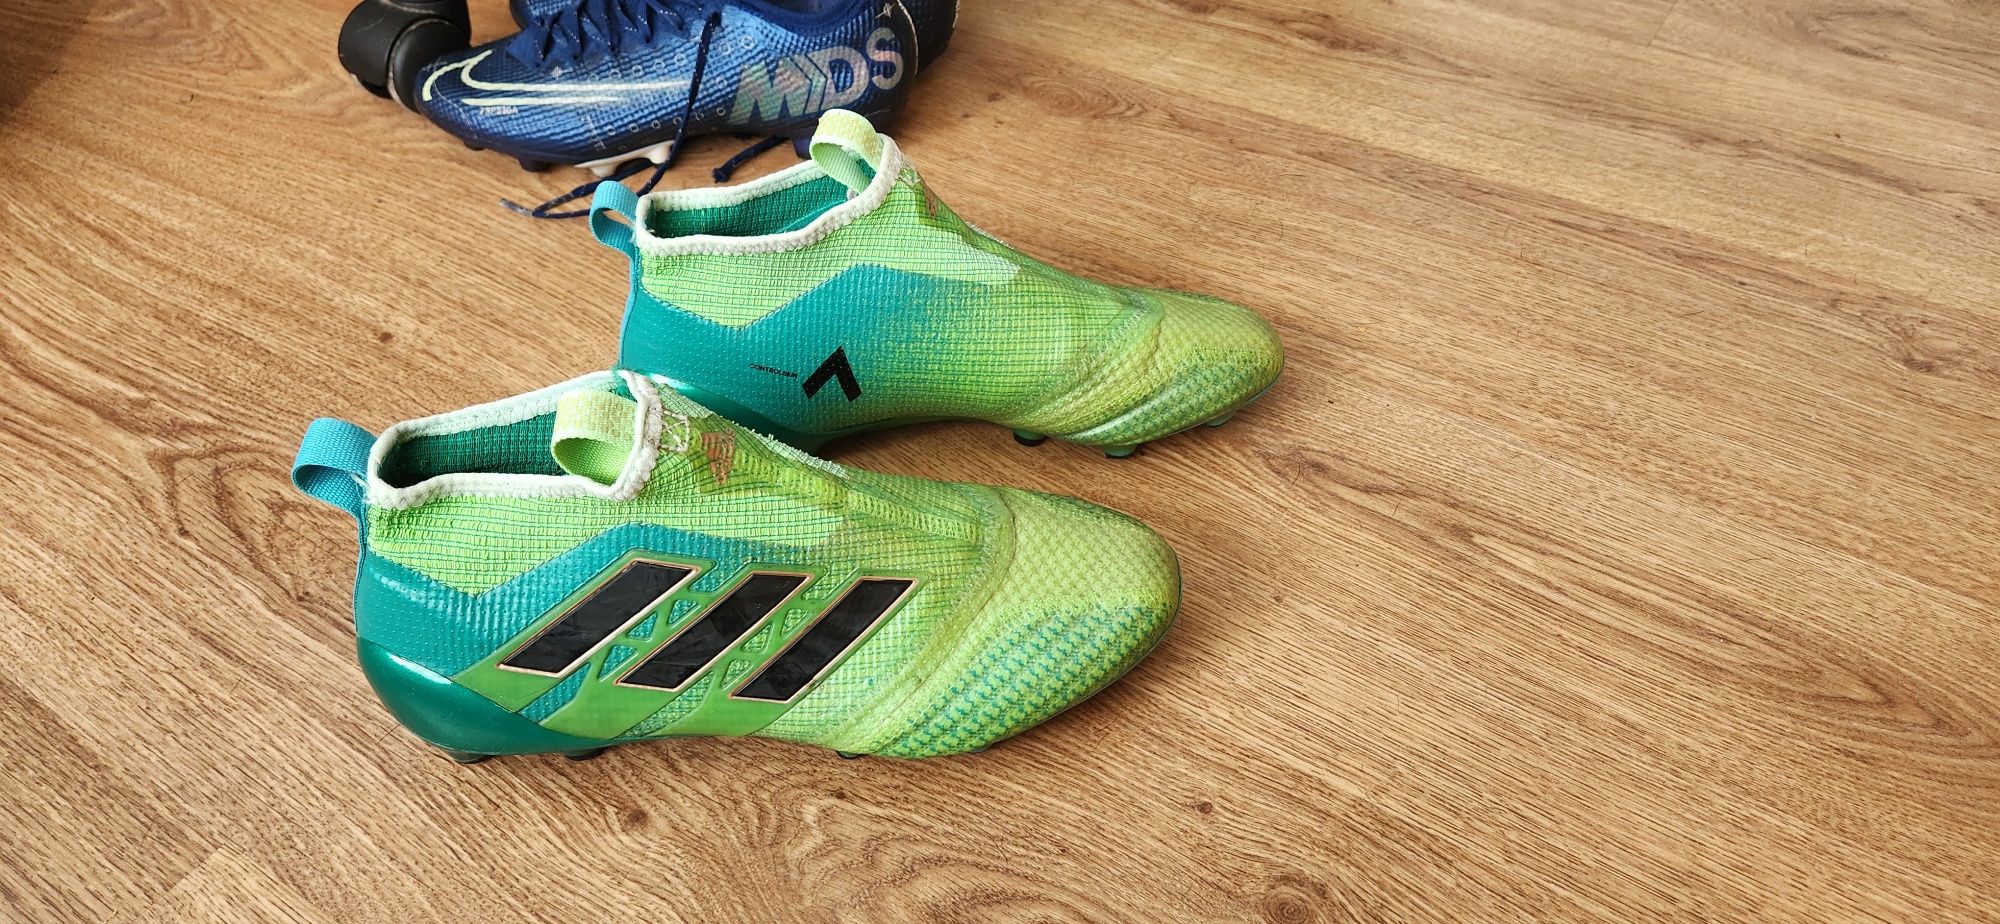 Adidas Ace про-футболни обувки- бутонки 38.5 номер